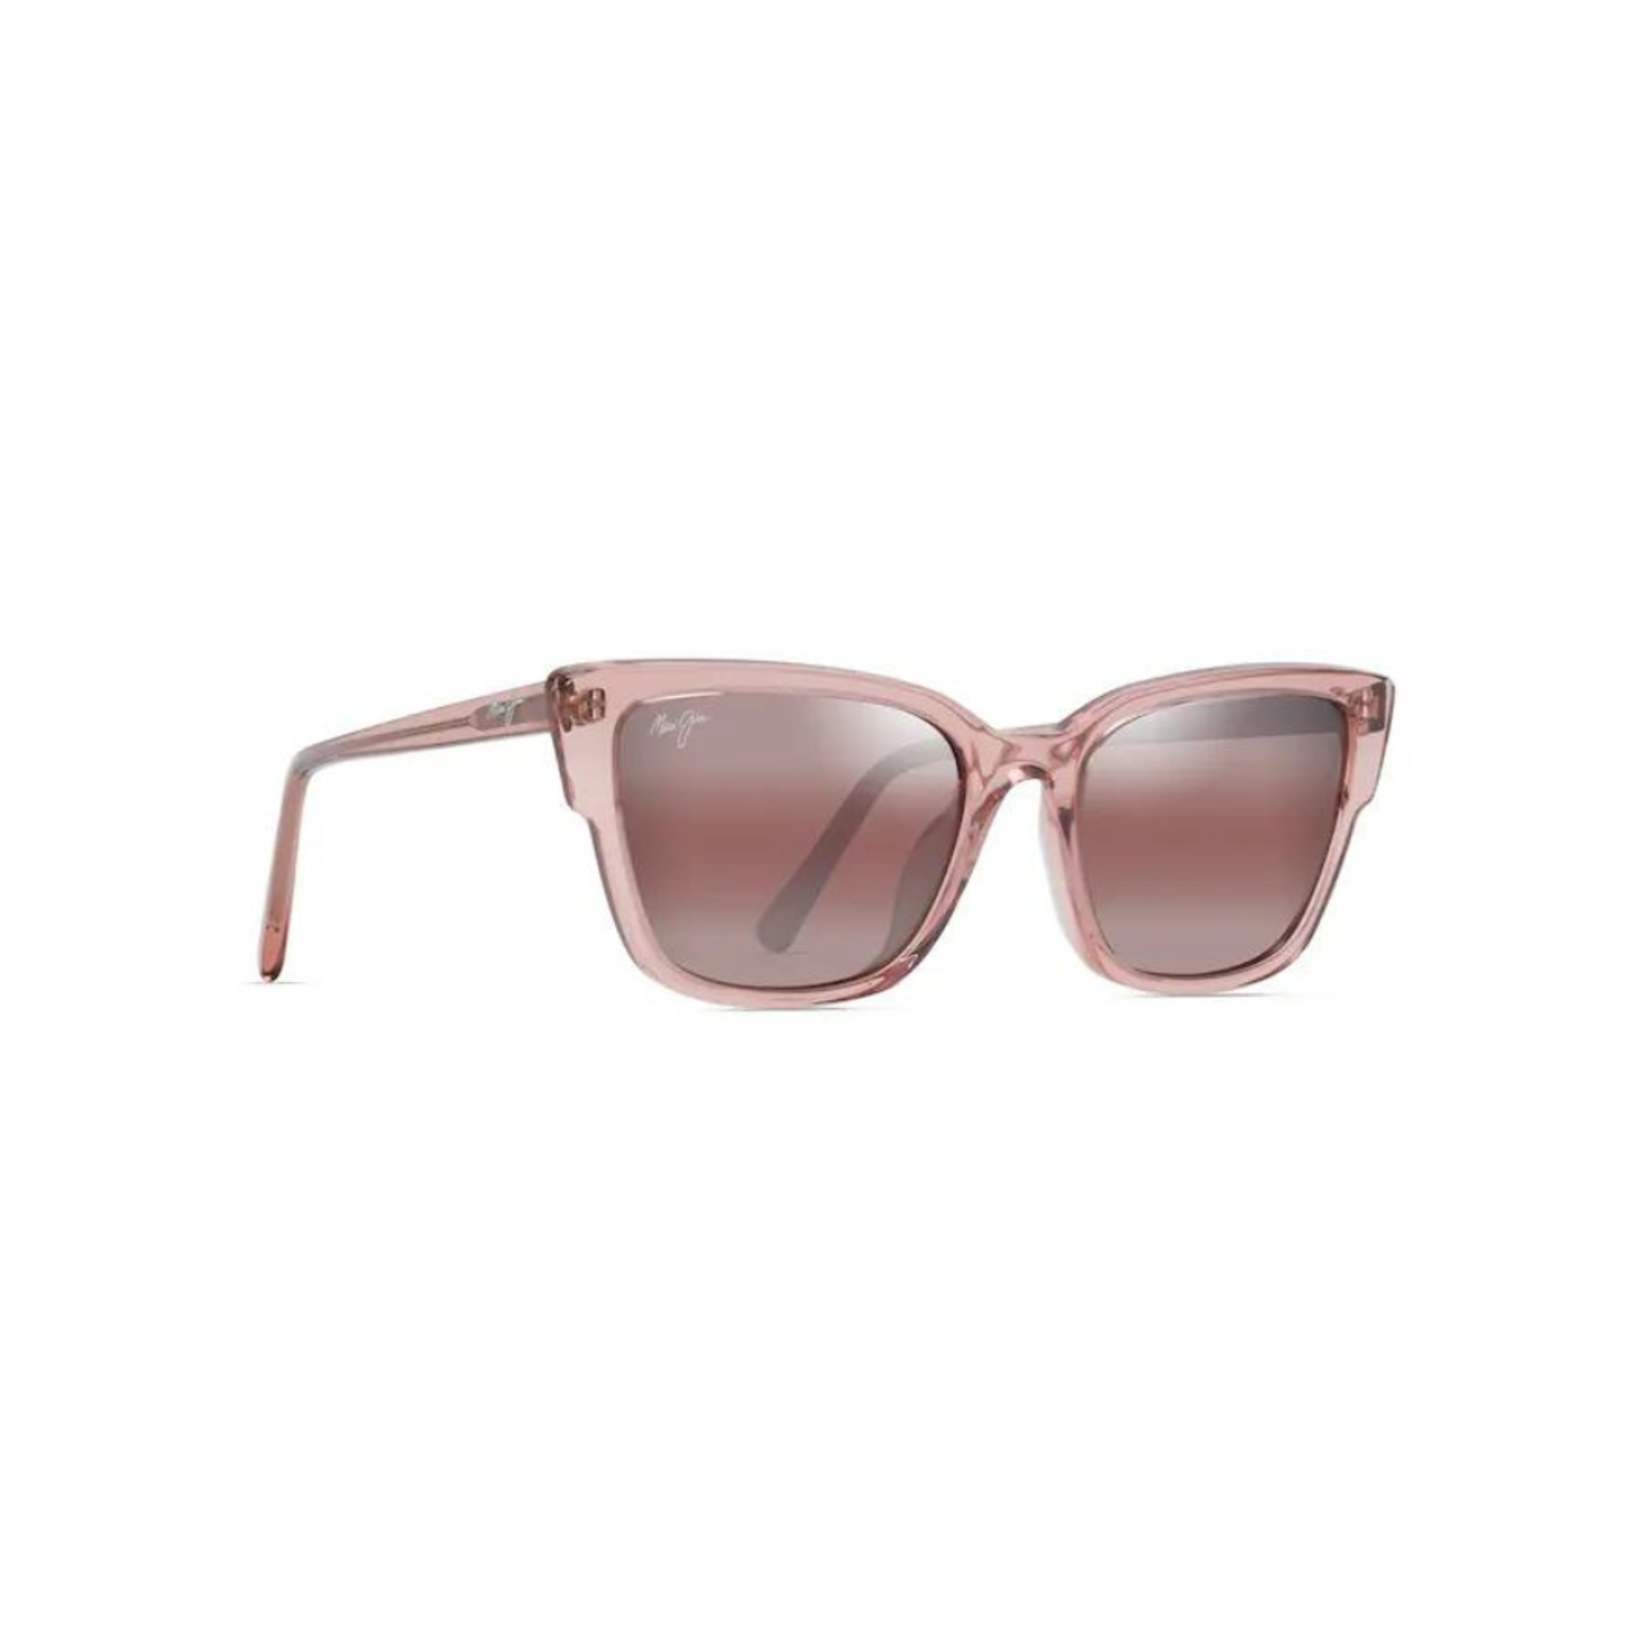 Maui Jim Maui Jim Premium Sunglasses (23)